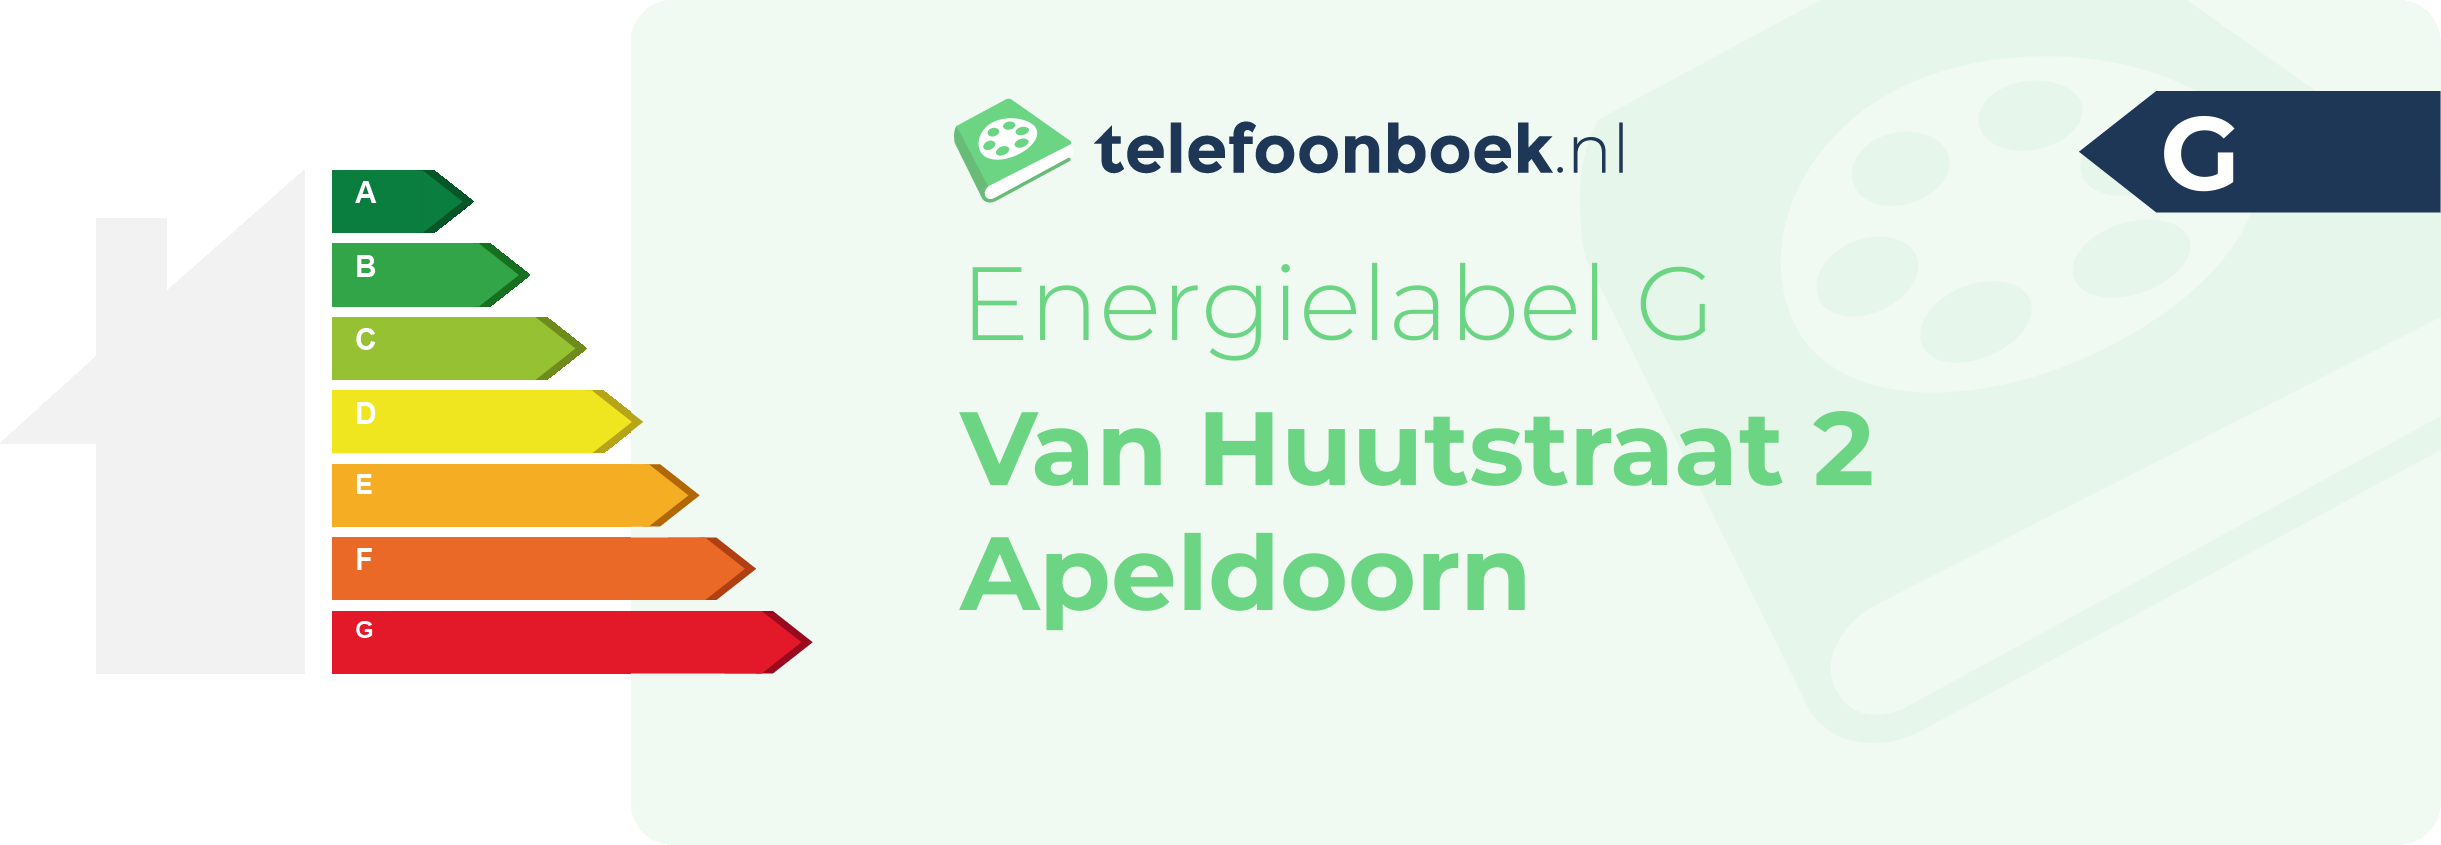 Energielabel Van Huutstraat 2 Apeldoorn